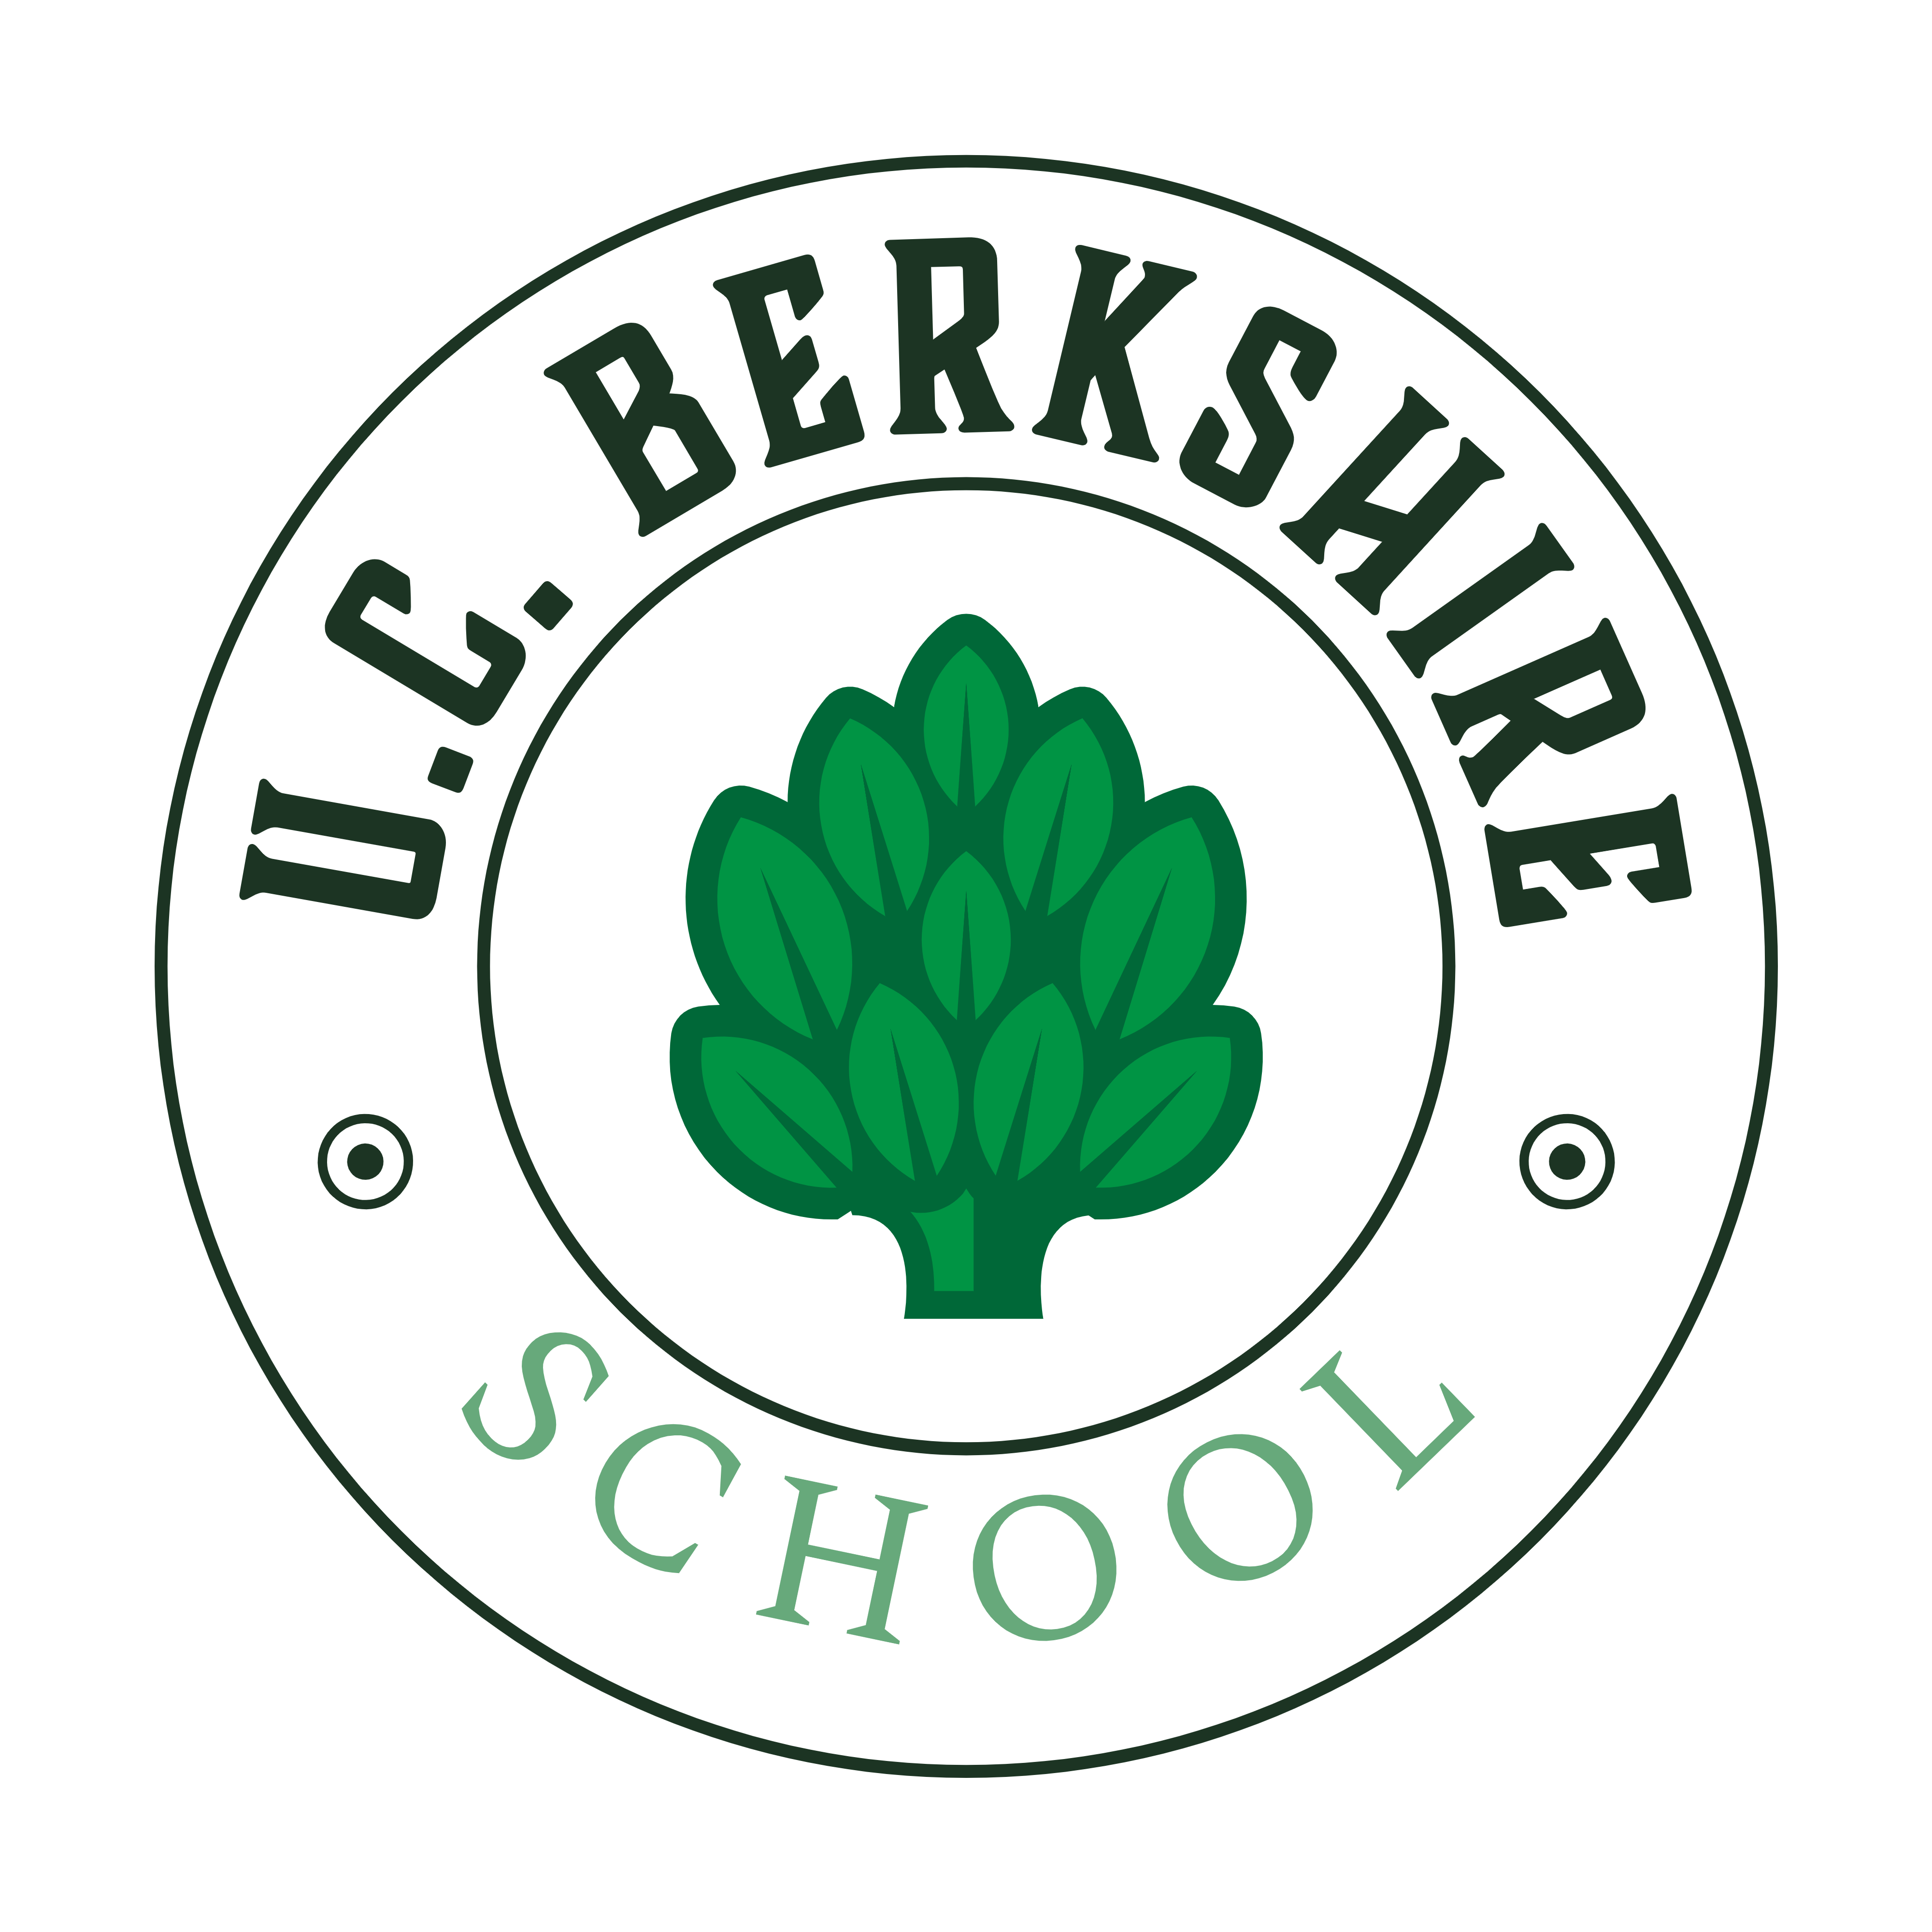 U.C. Berkshire School